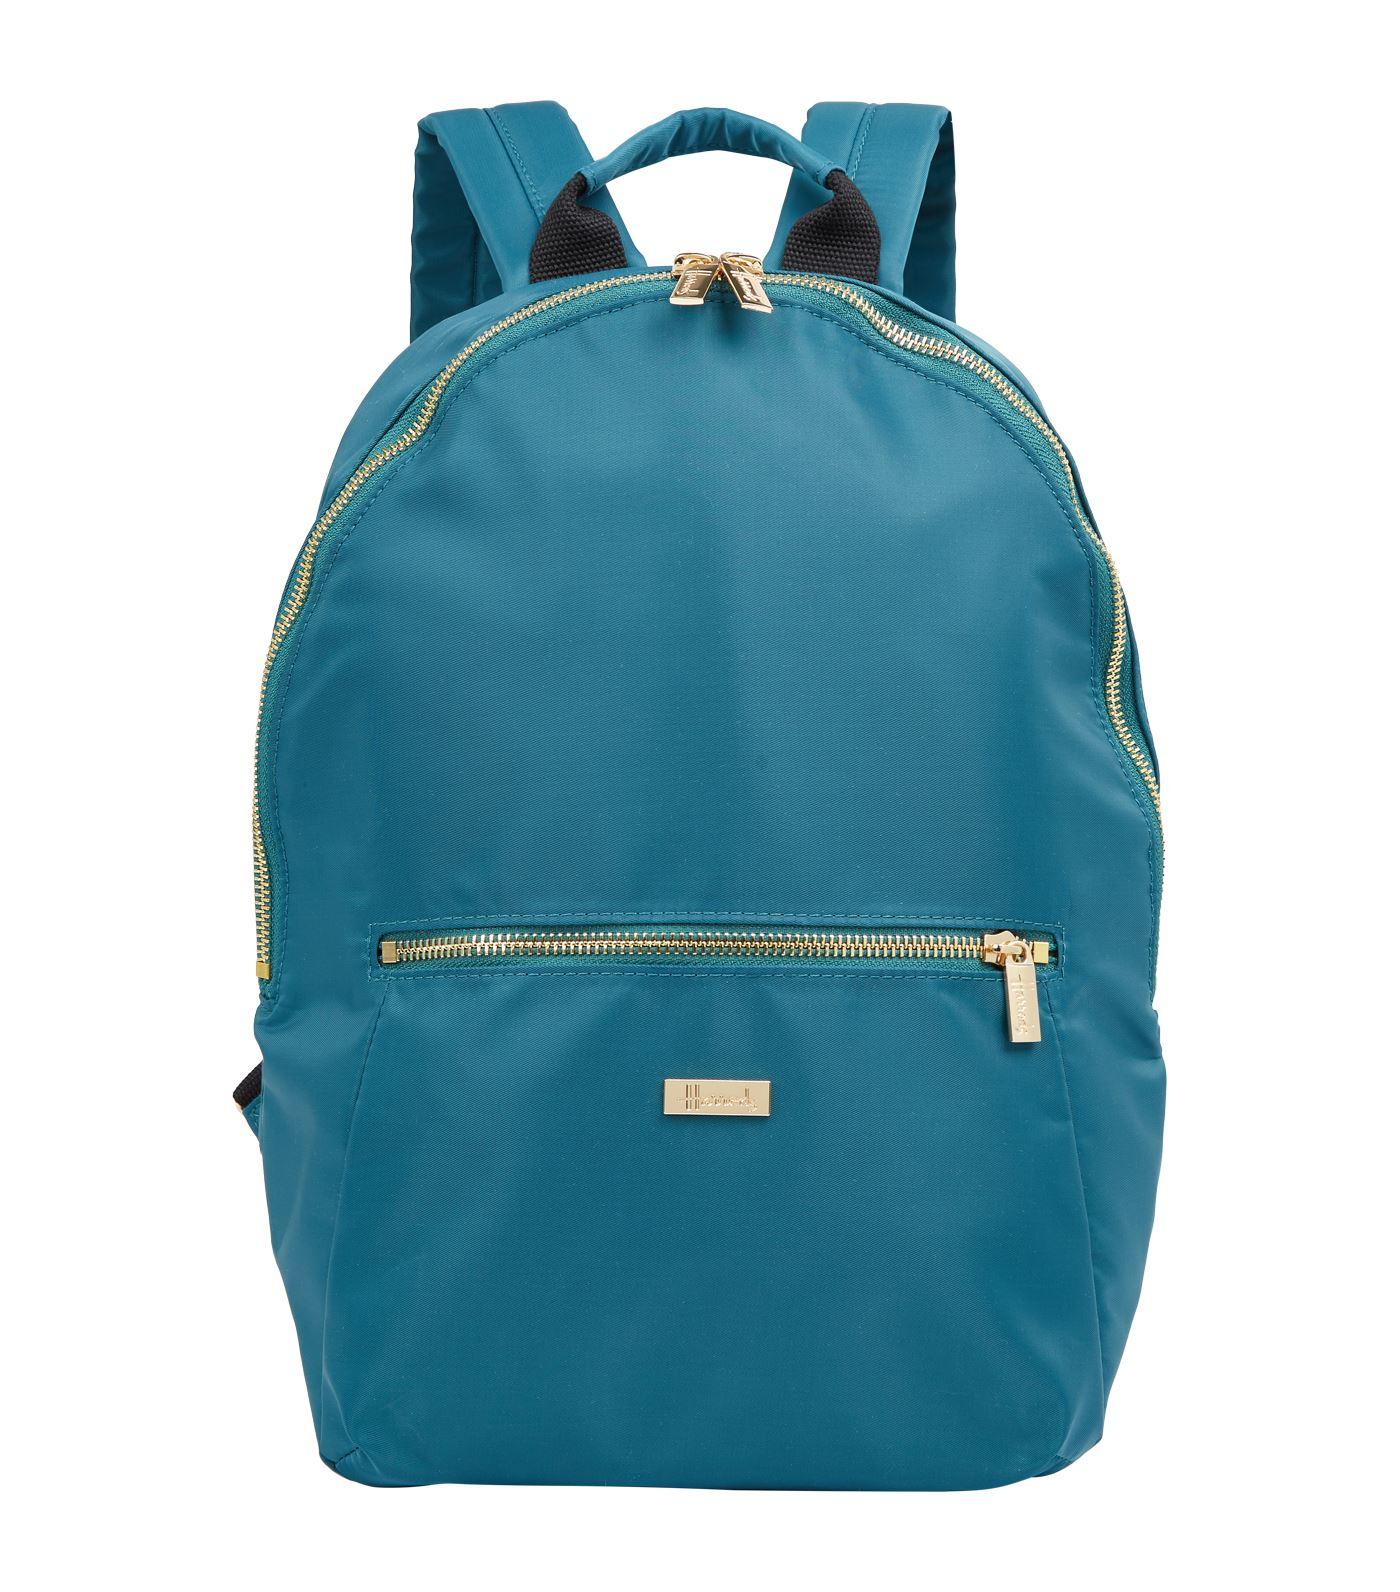 Harrods Iris Backpack in Blue - Lyst